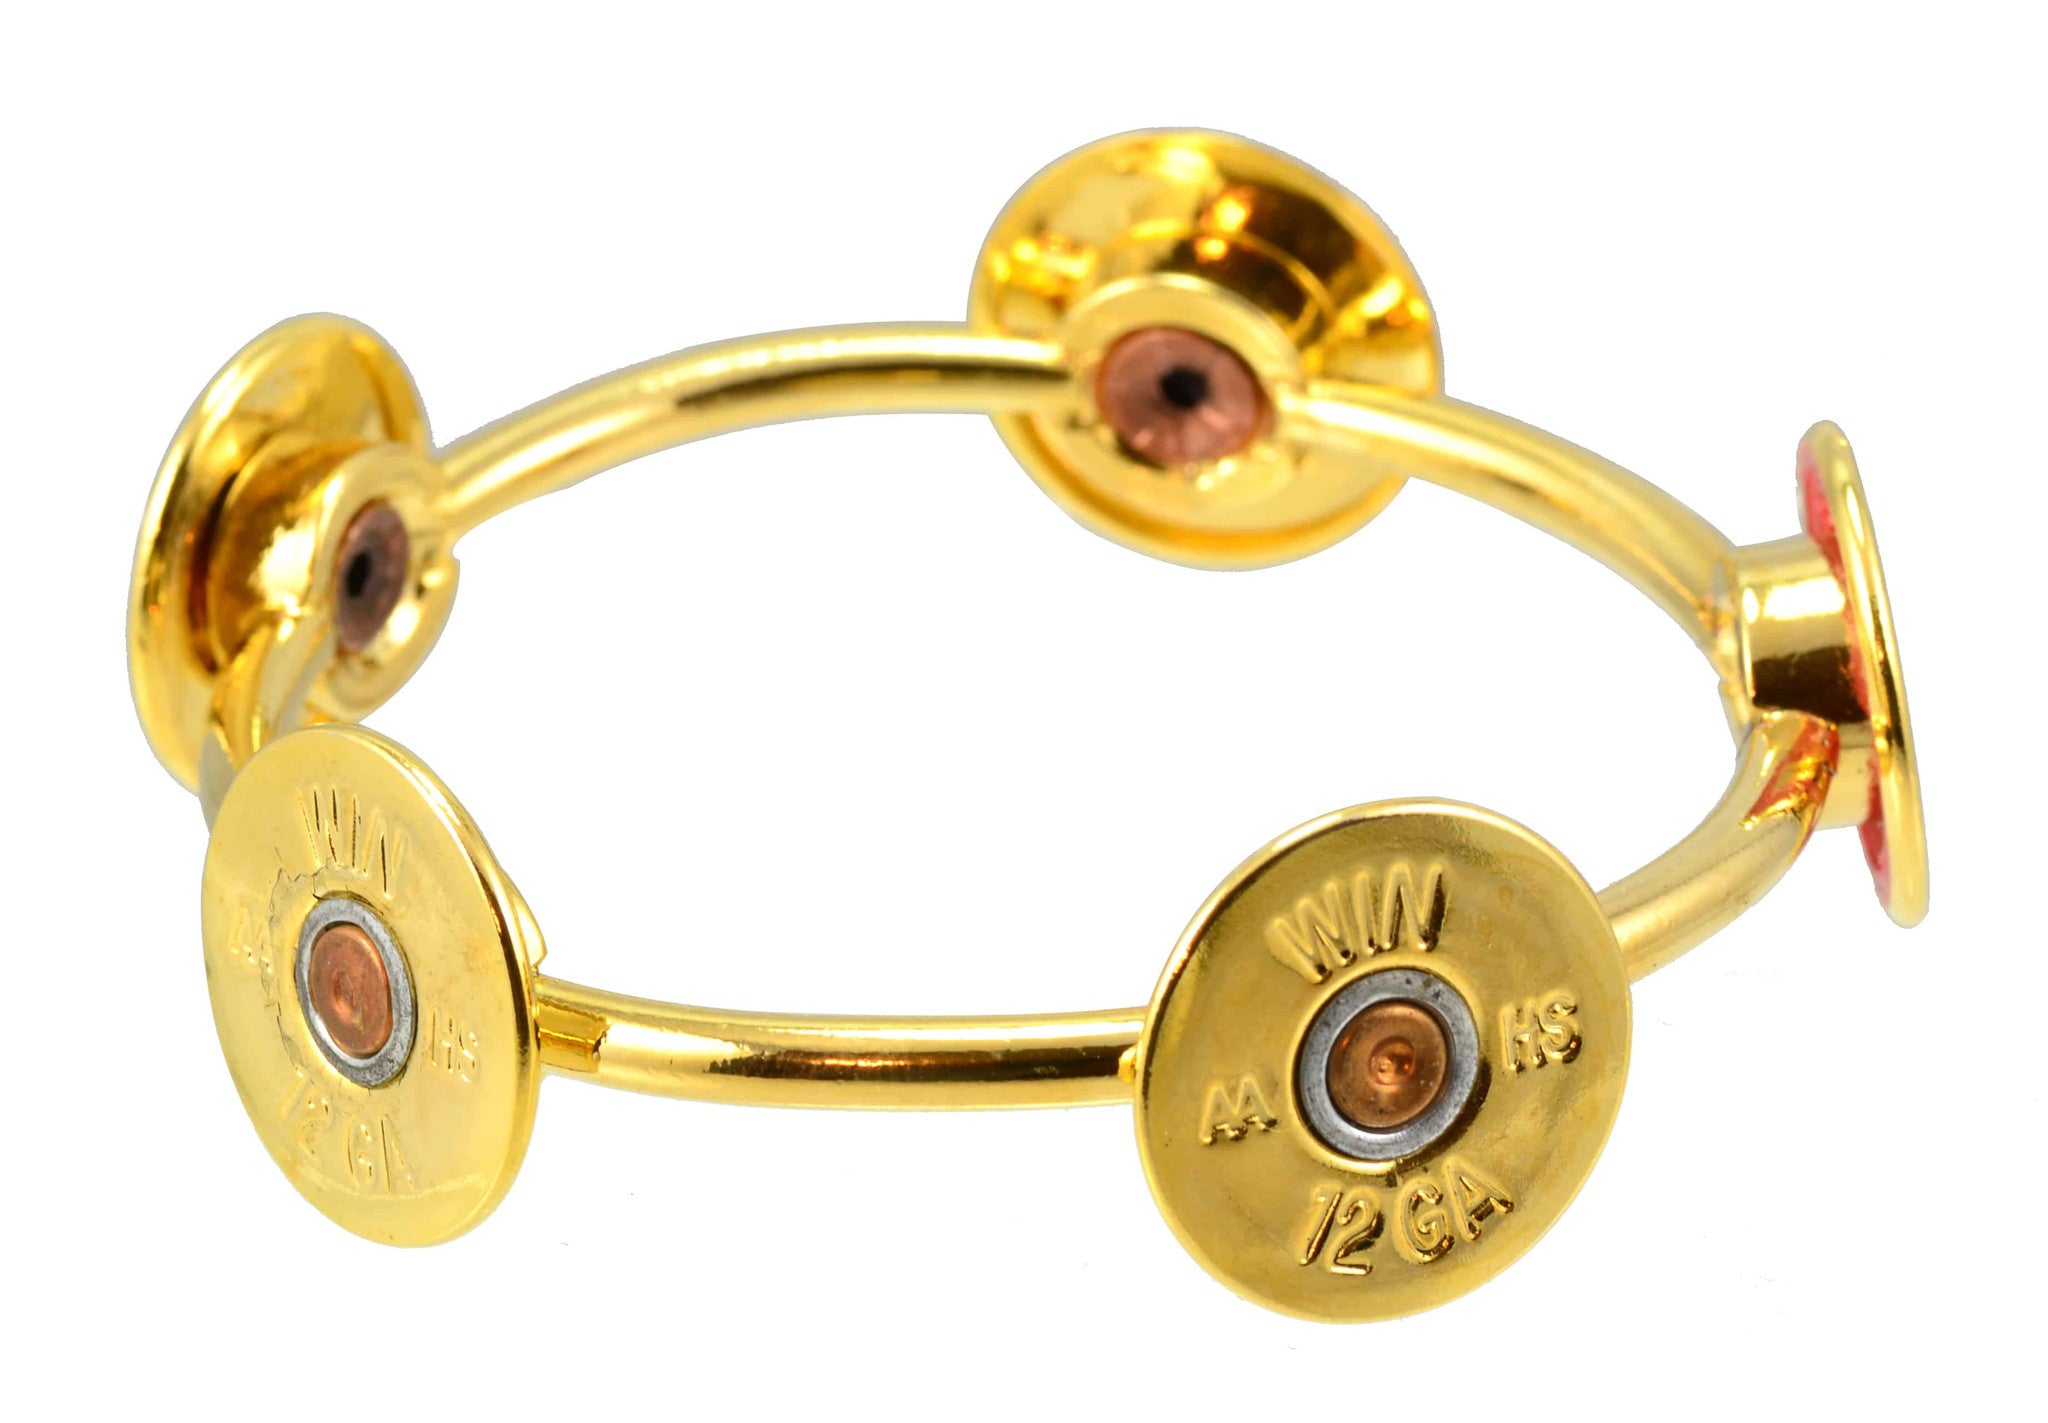 Lizzy Js Handmade Round Gold Plated 12 Gauge Shotgun Bullet Shell Cuff Bracelet